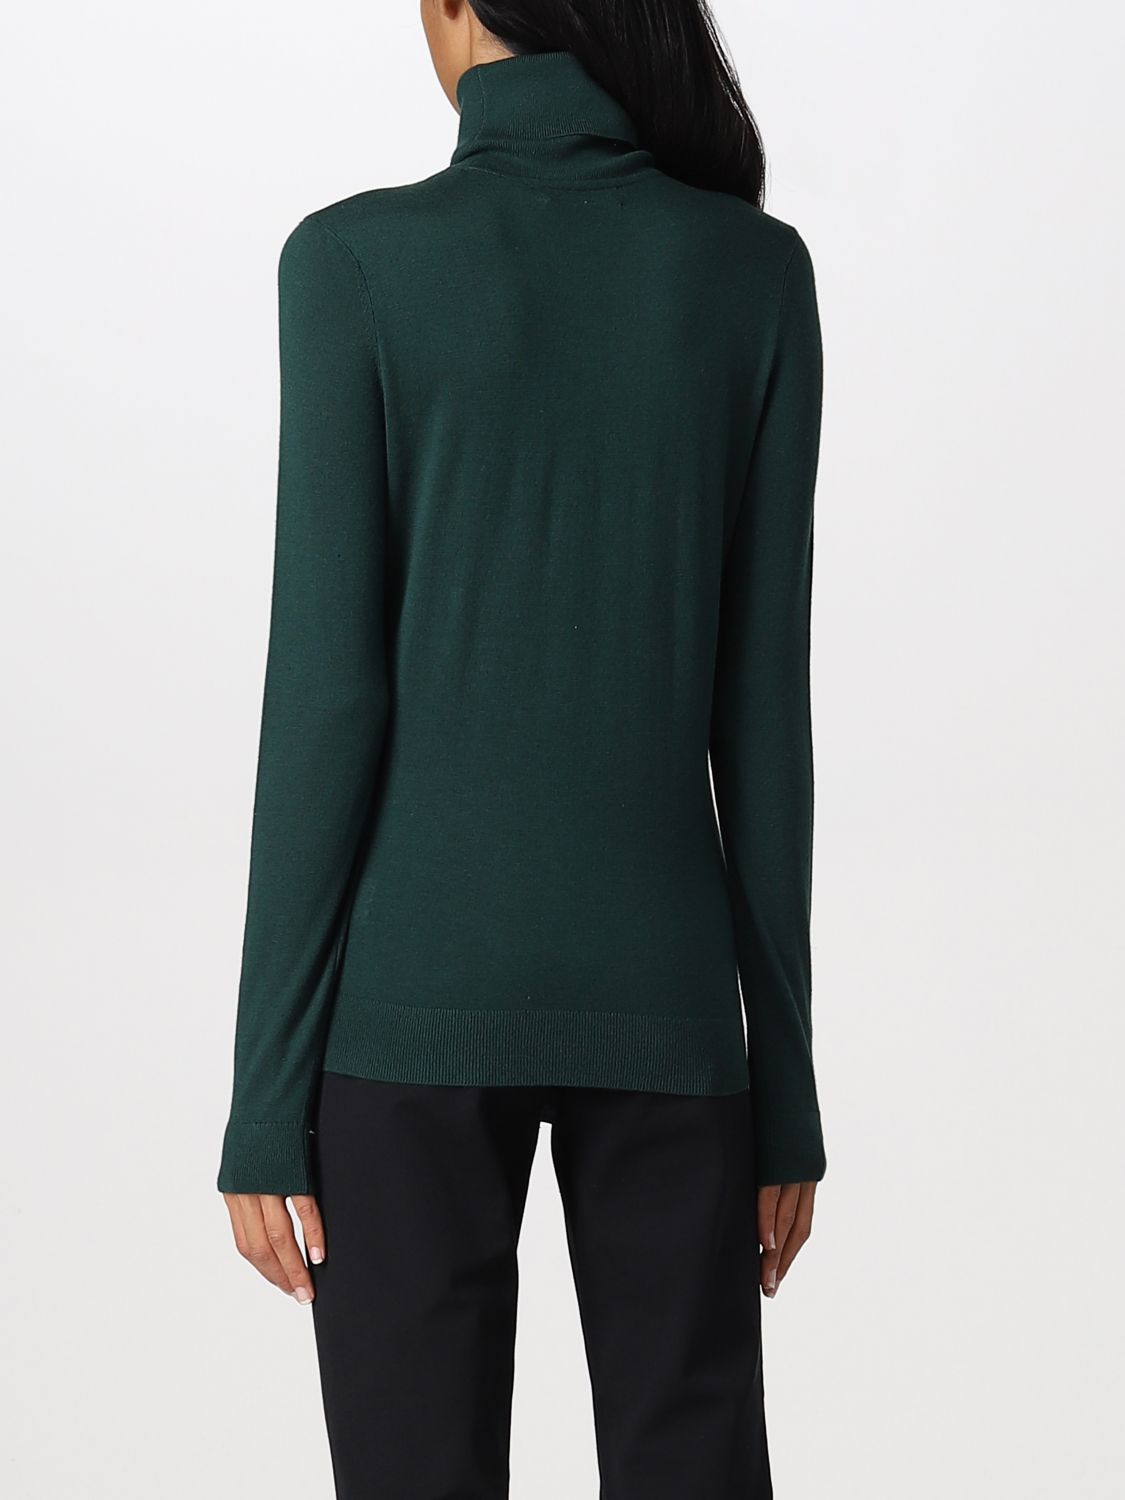 LAUREN RALPH LAUREN: sweater for woman - Green | Lauren Ralph Lauren sweater  200675903 online on 